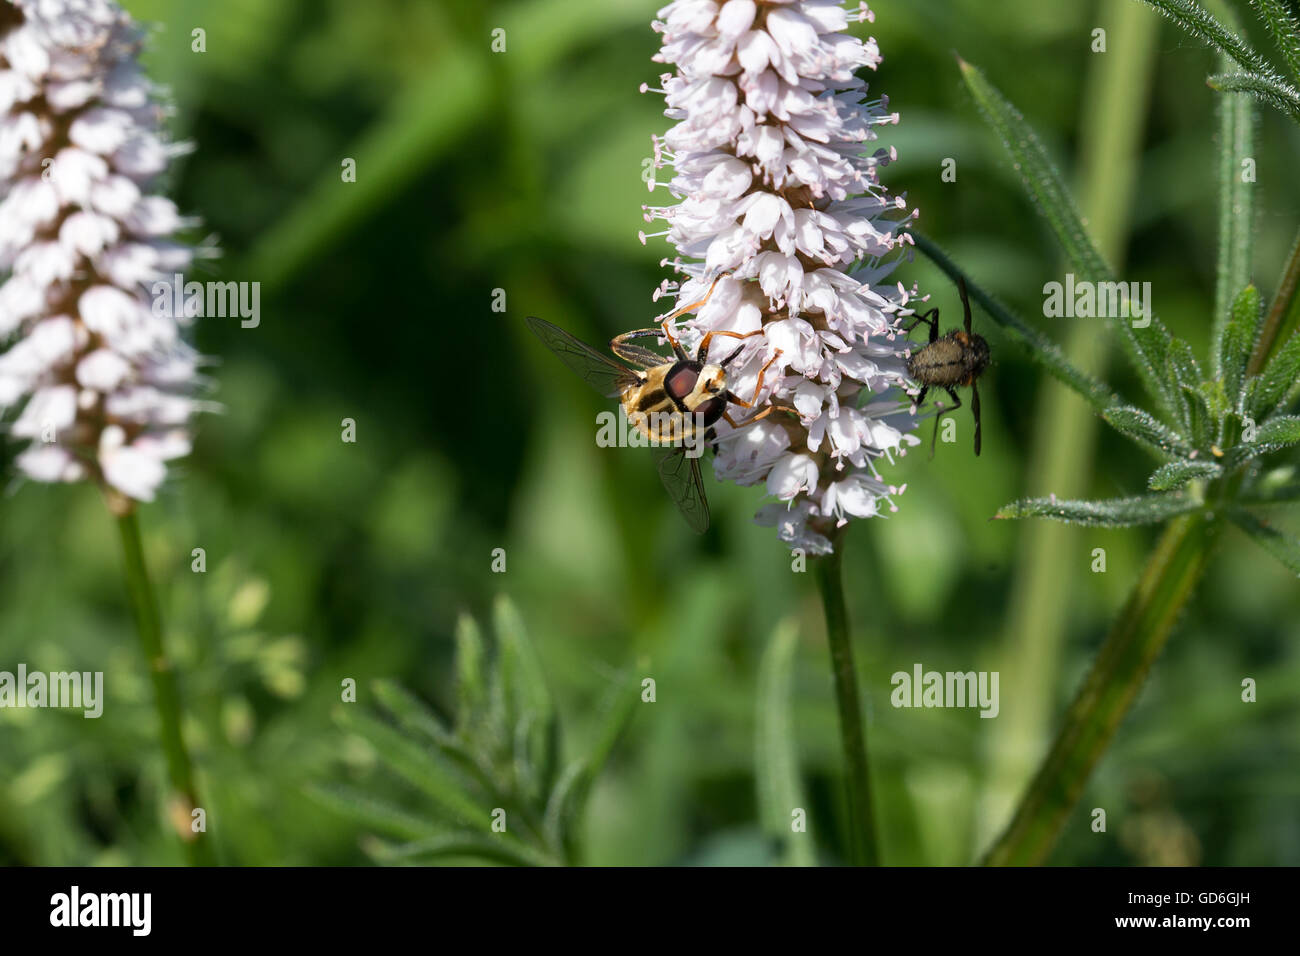 Gemeine Sonnenschwebfliege an einer Pflanze  Common hover fly on a plant Stock Photo